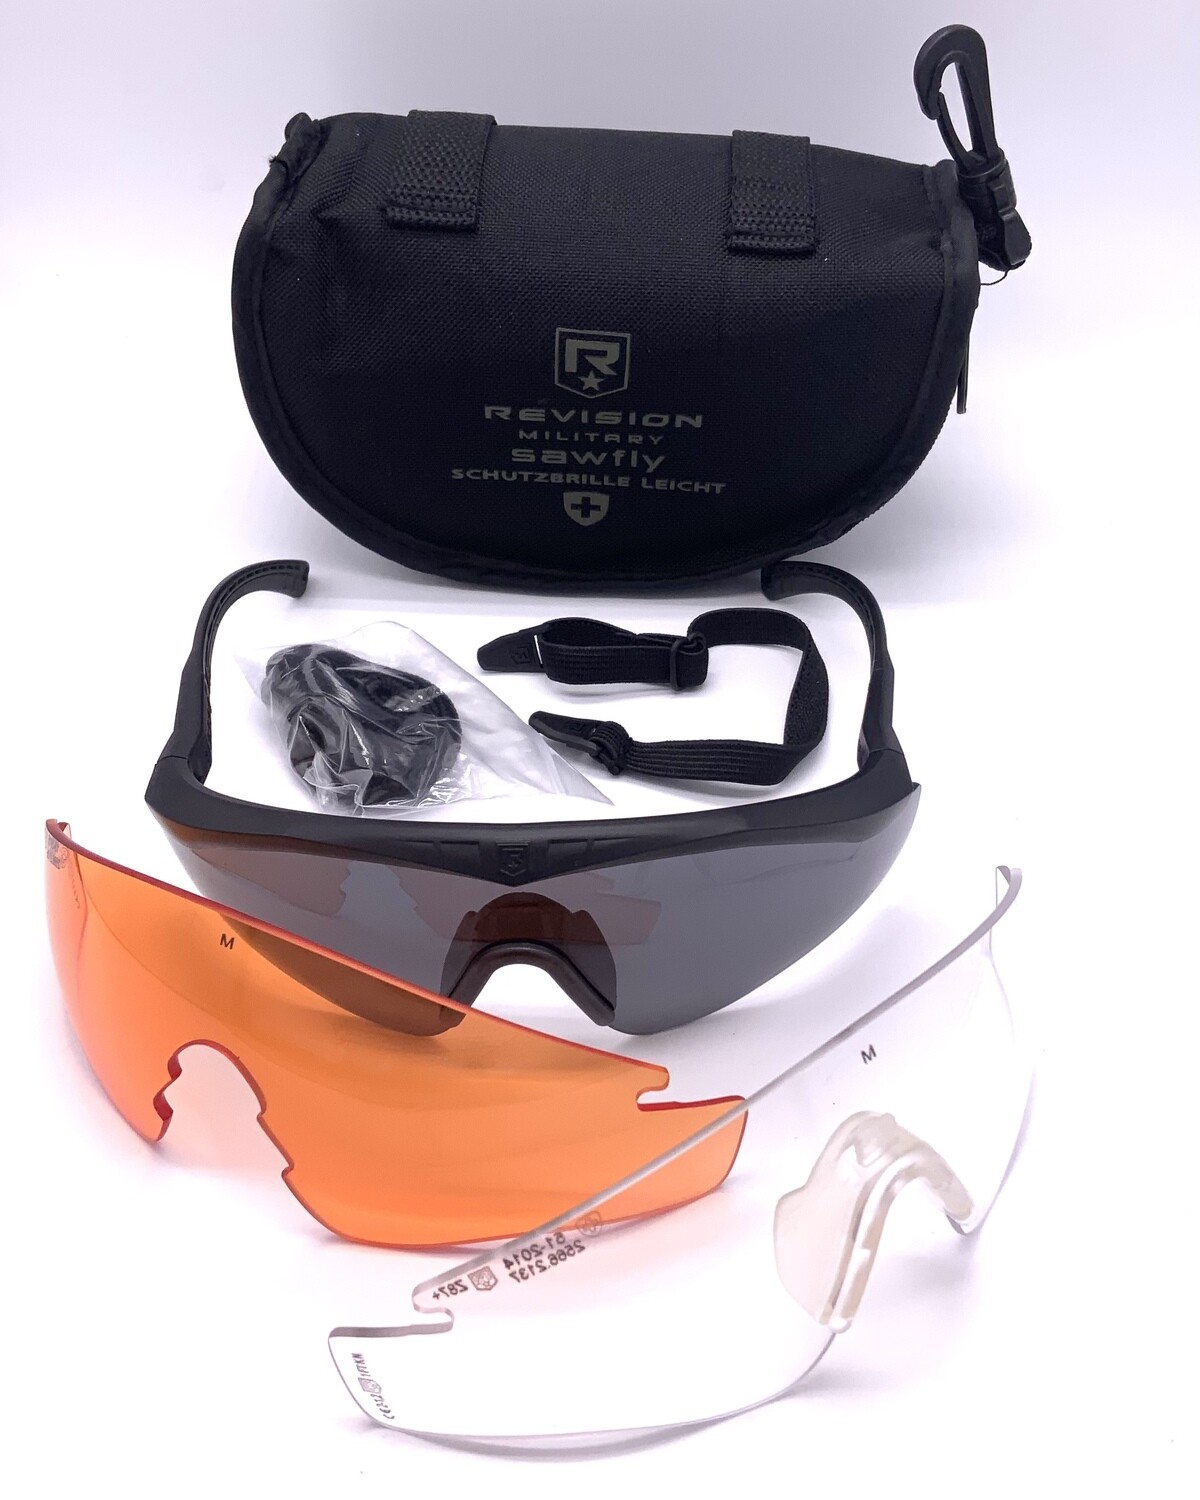 Sonnenbrille Revision Sawfly „Schutzbrille Leicht“ der Schweizer Armee Neu